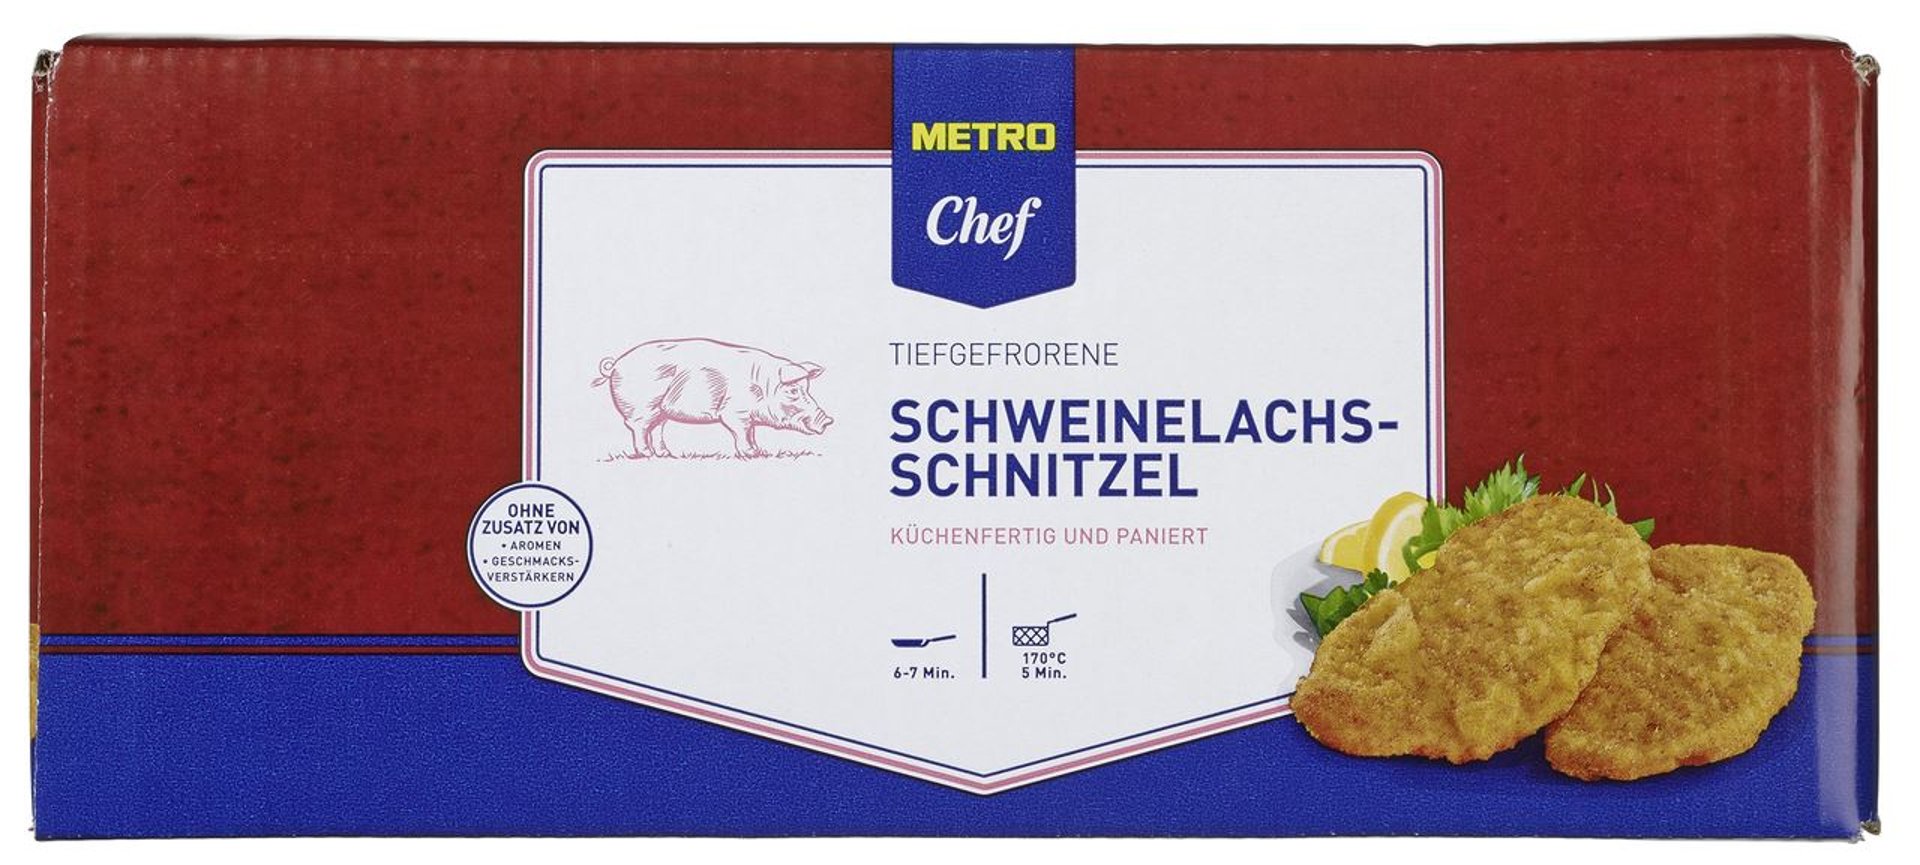 METRO Chef - Schweine Lachsschnitzel à g ca. tiefgefroren, 40 Stück paniert, 200 Karton 8 - kg